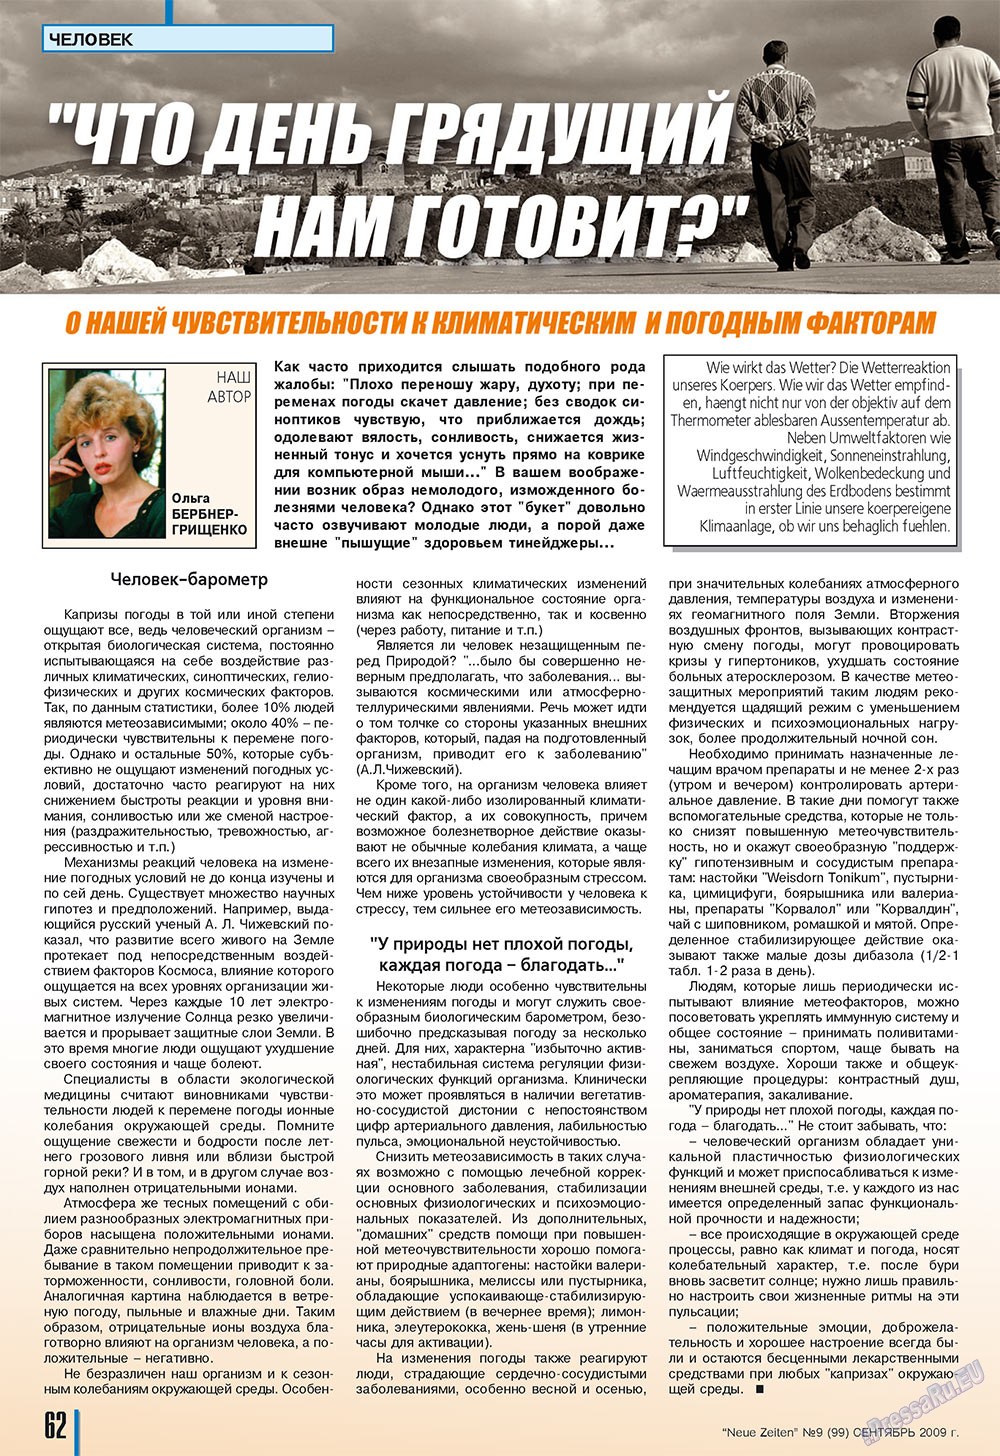 Neue Zeiten, журнал. 2009 №9 стр.62